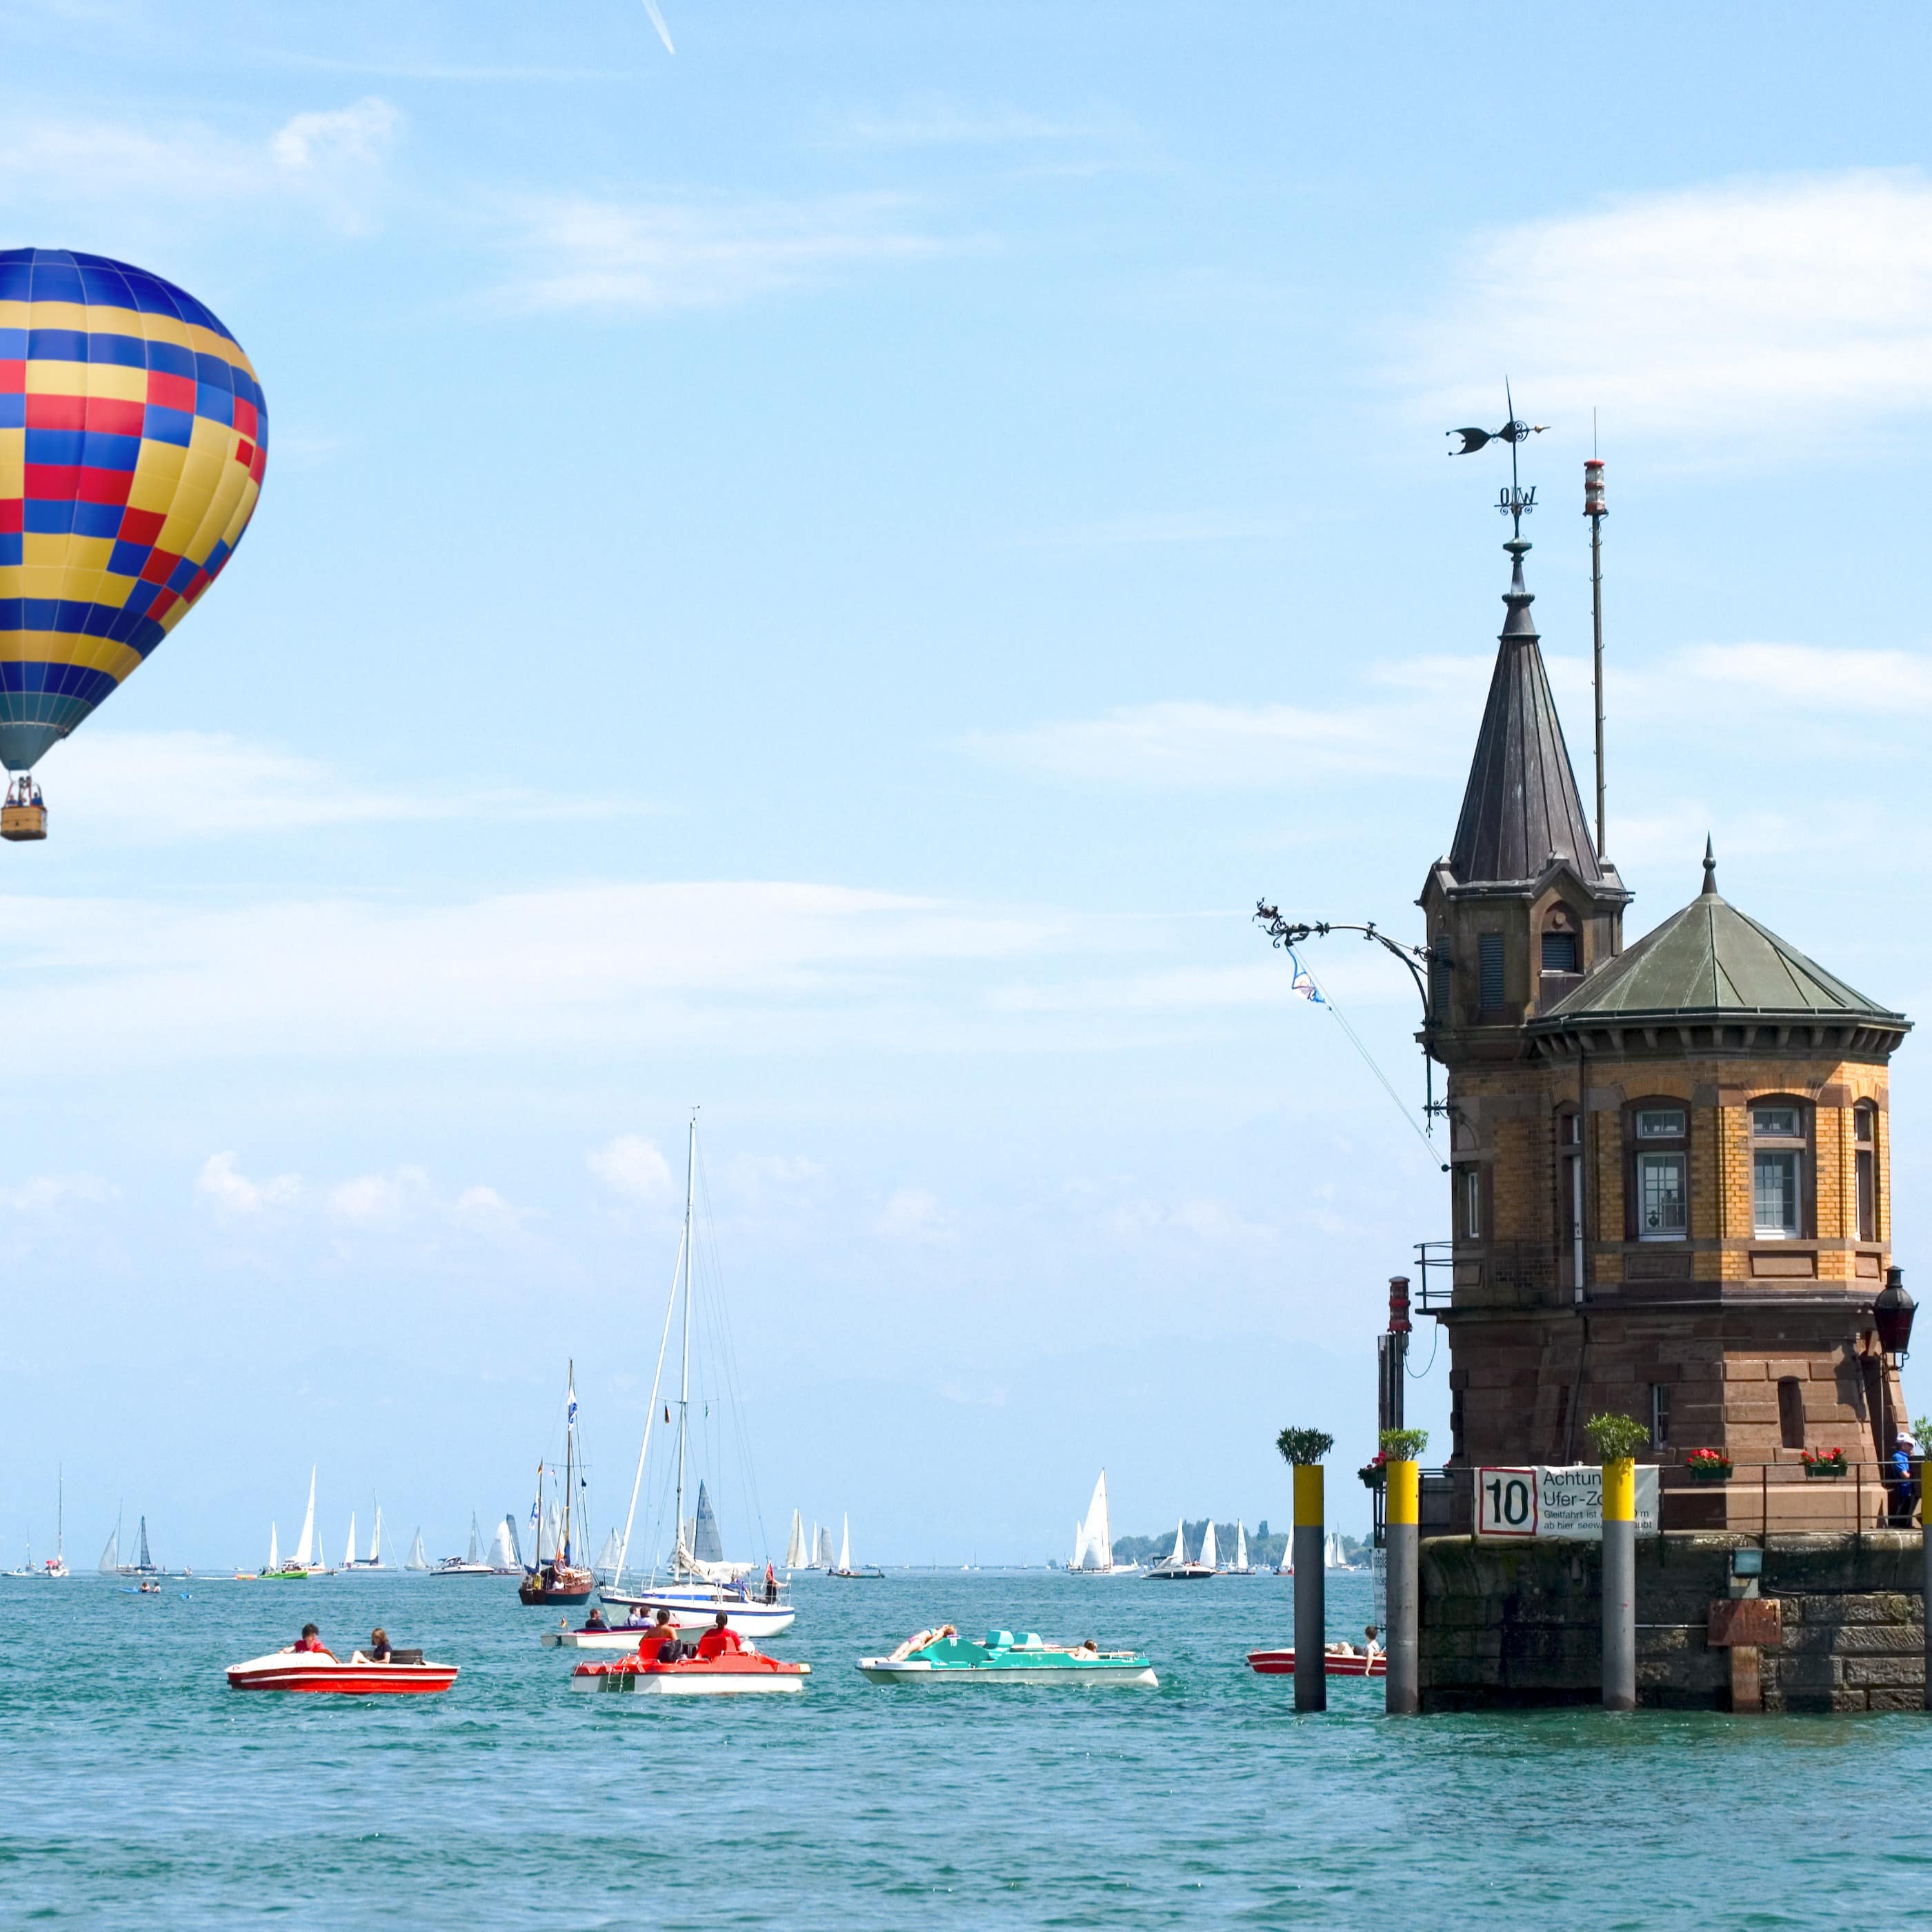 Ein bunter Heißluftballon fährt über dem Bodensee. Boote im Wasser, rechts der Hafen von Konstanz.